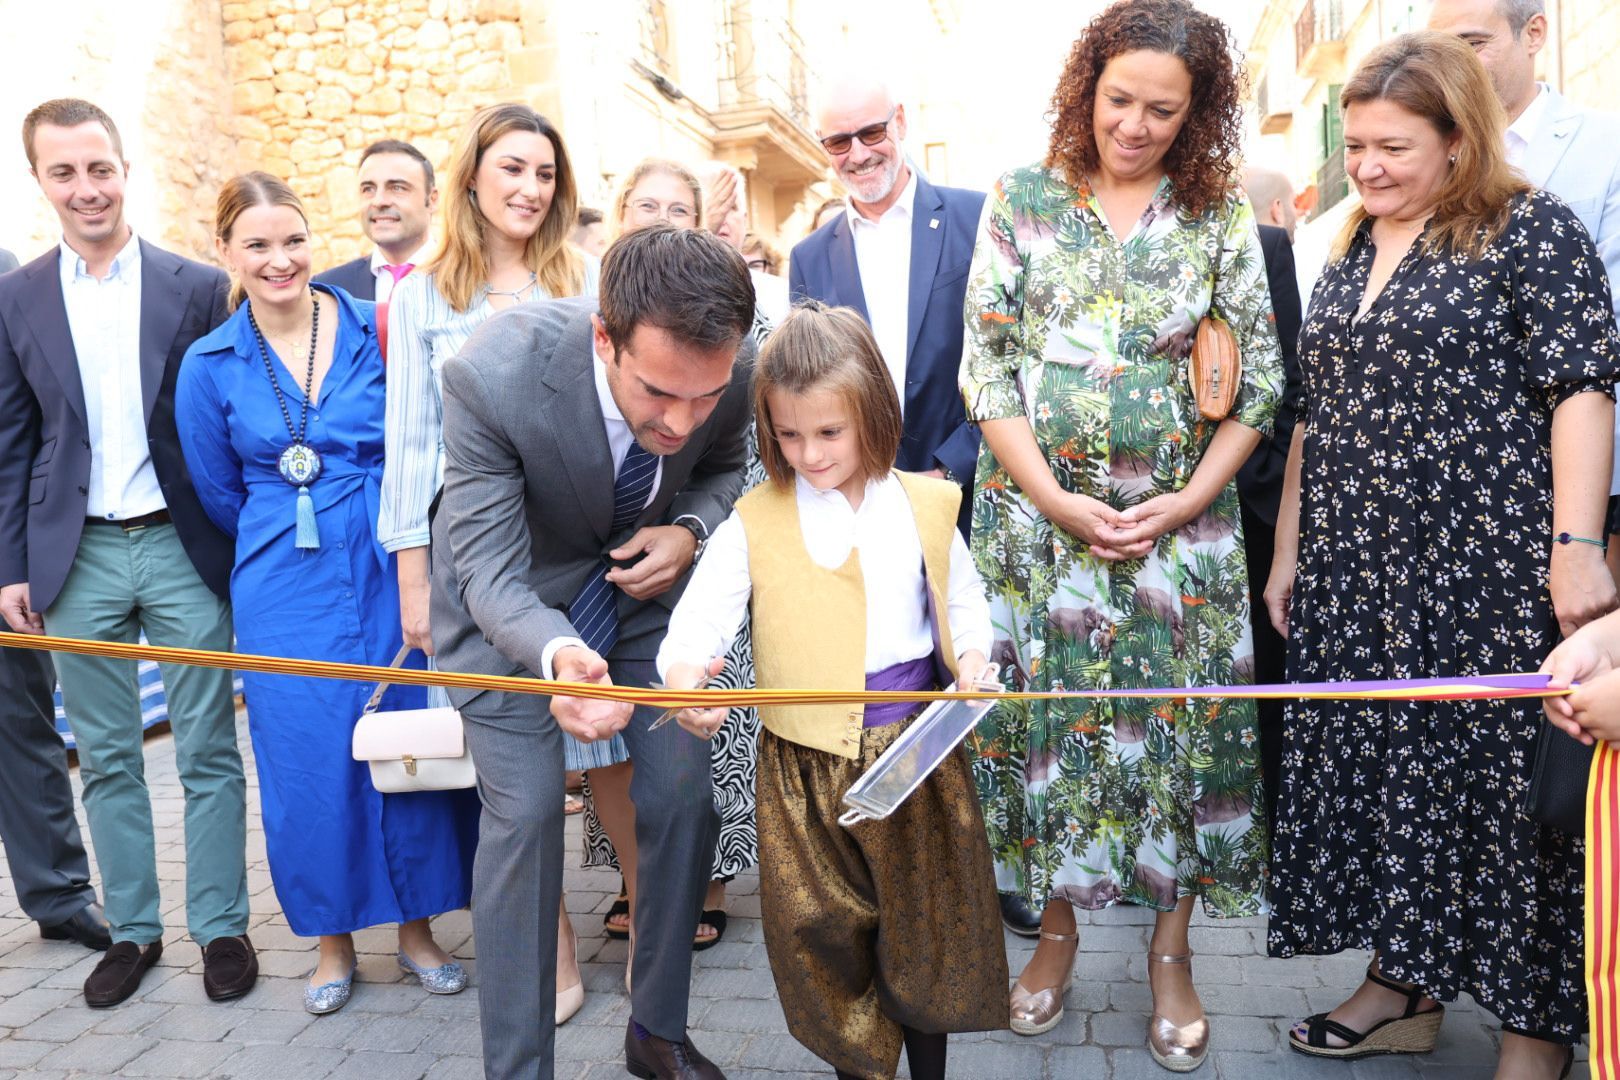 El alcalde de Llucmajor, Éric Jareño, inauguró la Fira de Llucmajor junto a Catalina Cladera